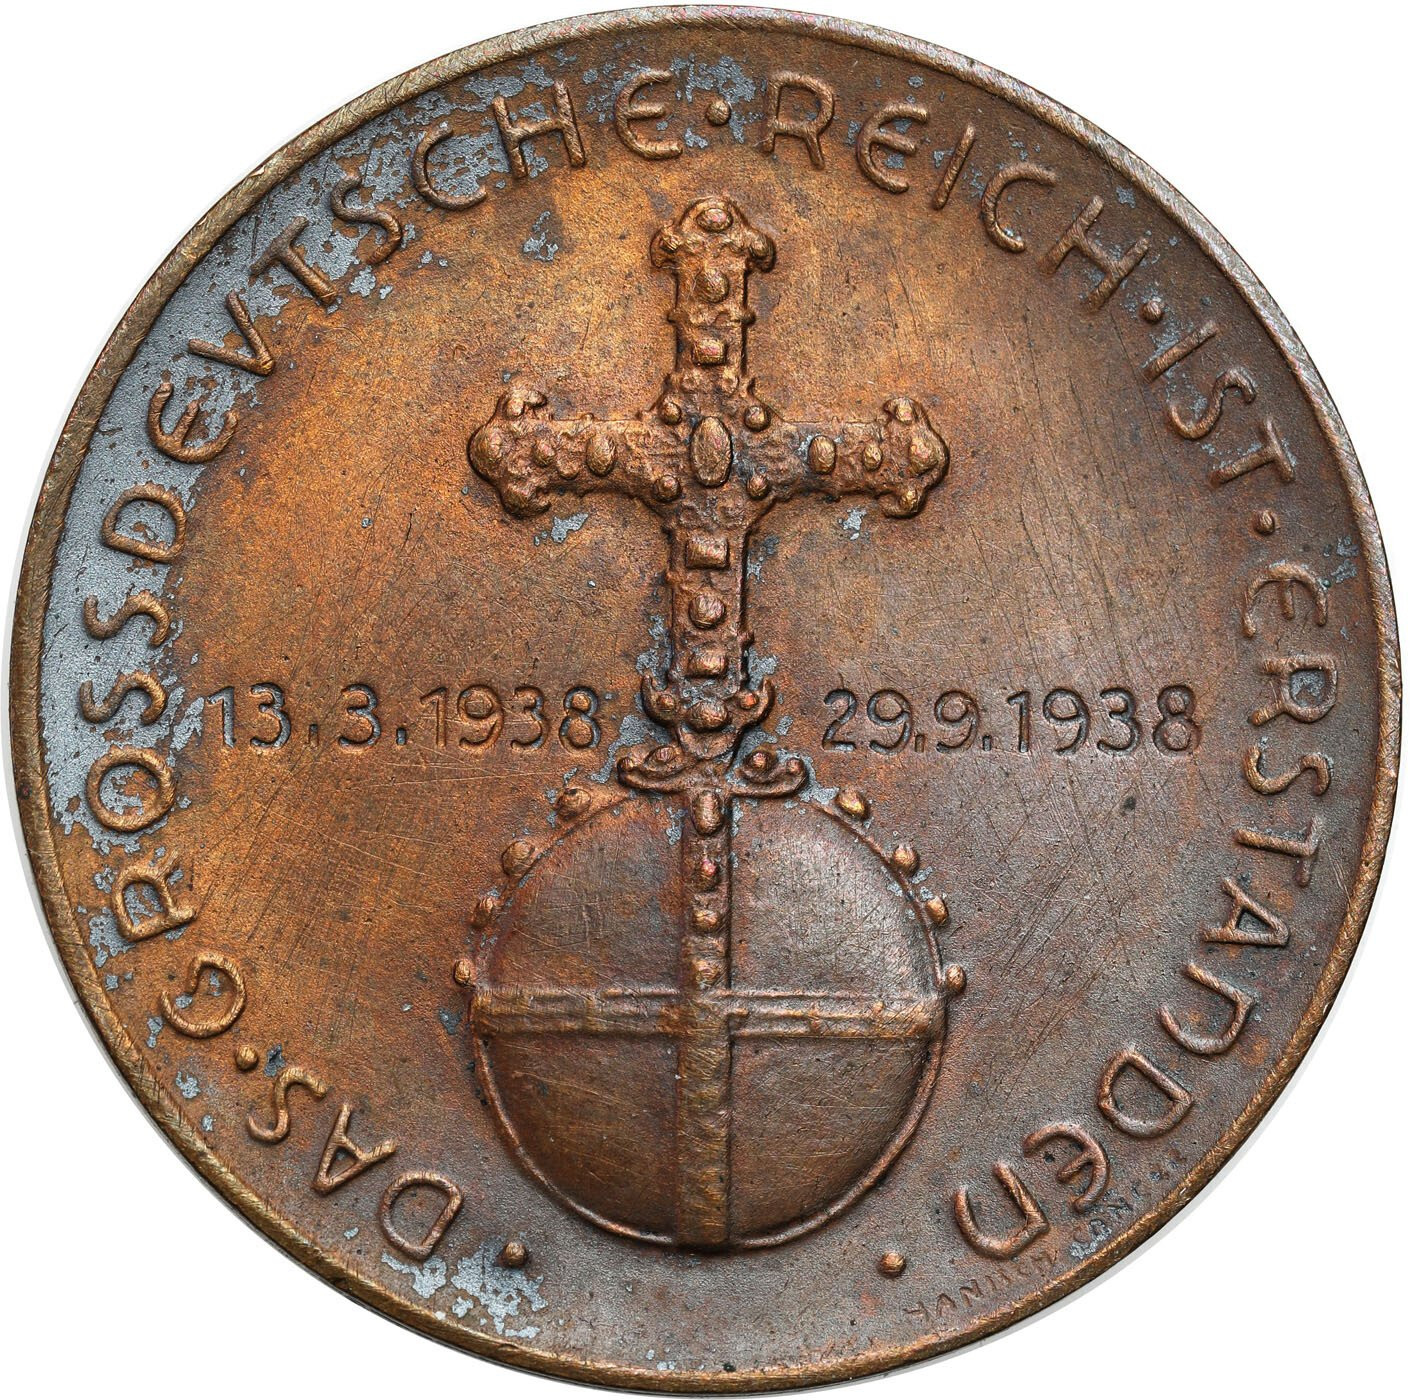 Niemcy, III Rzesza, Hitler, Medal Układ monachijski 1938